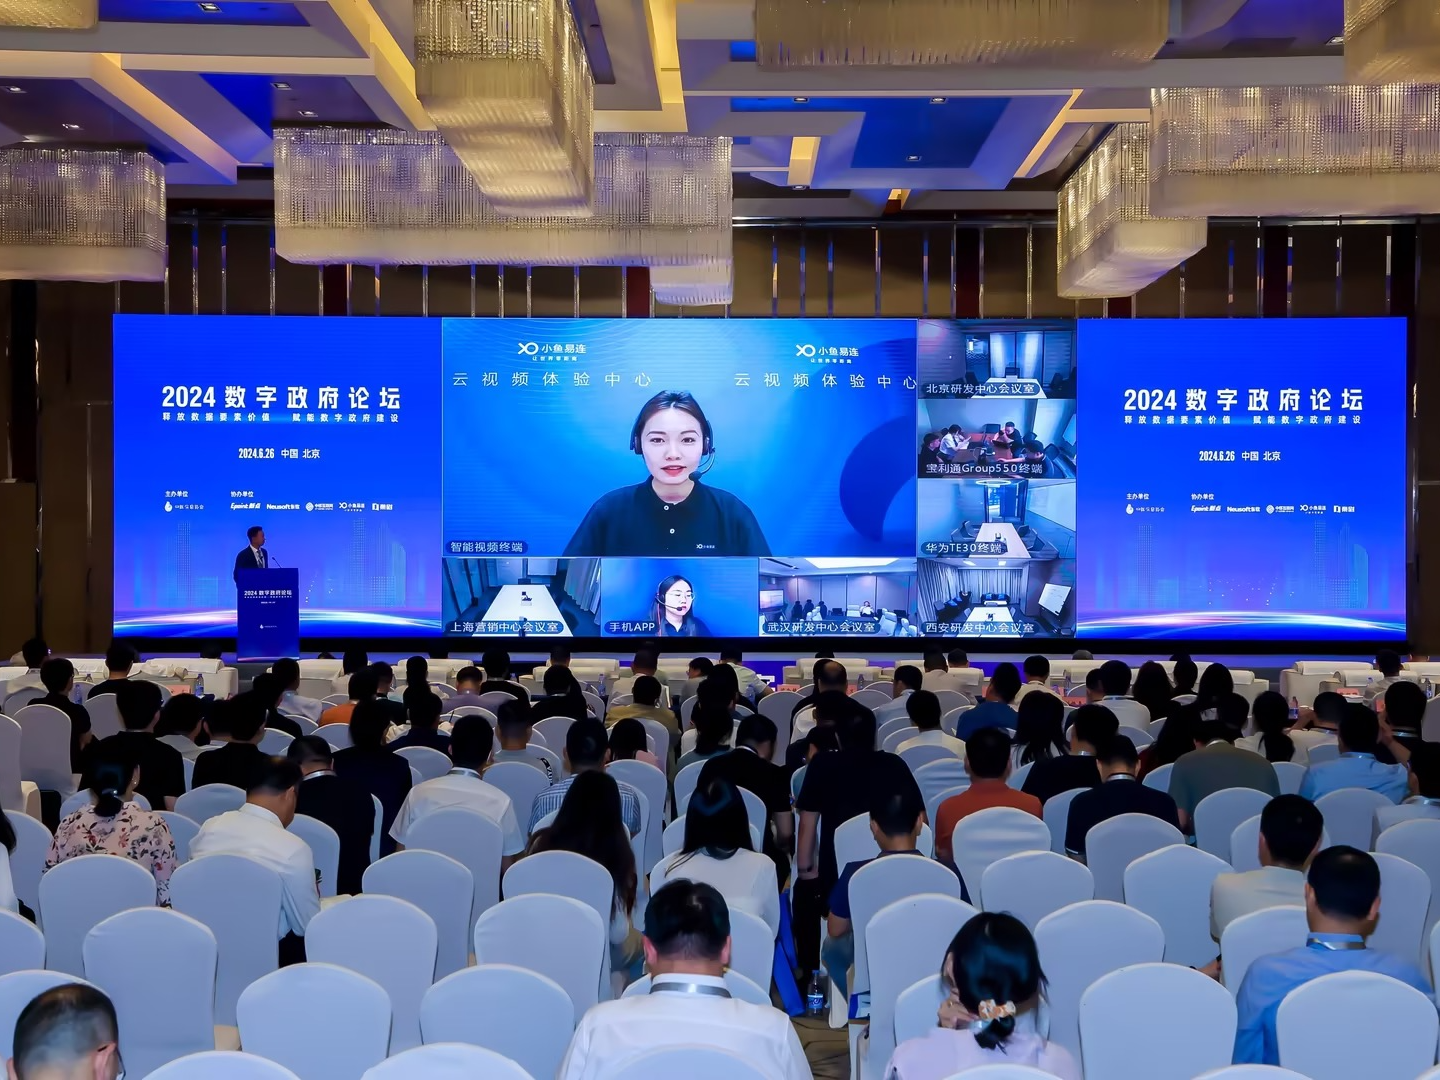 小鱼易连亮相2024数字政府论坛，以新型融合视频能力助力数字政府建设